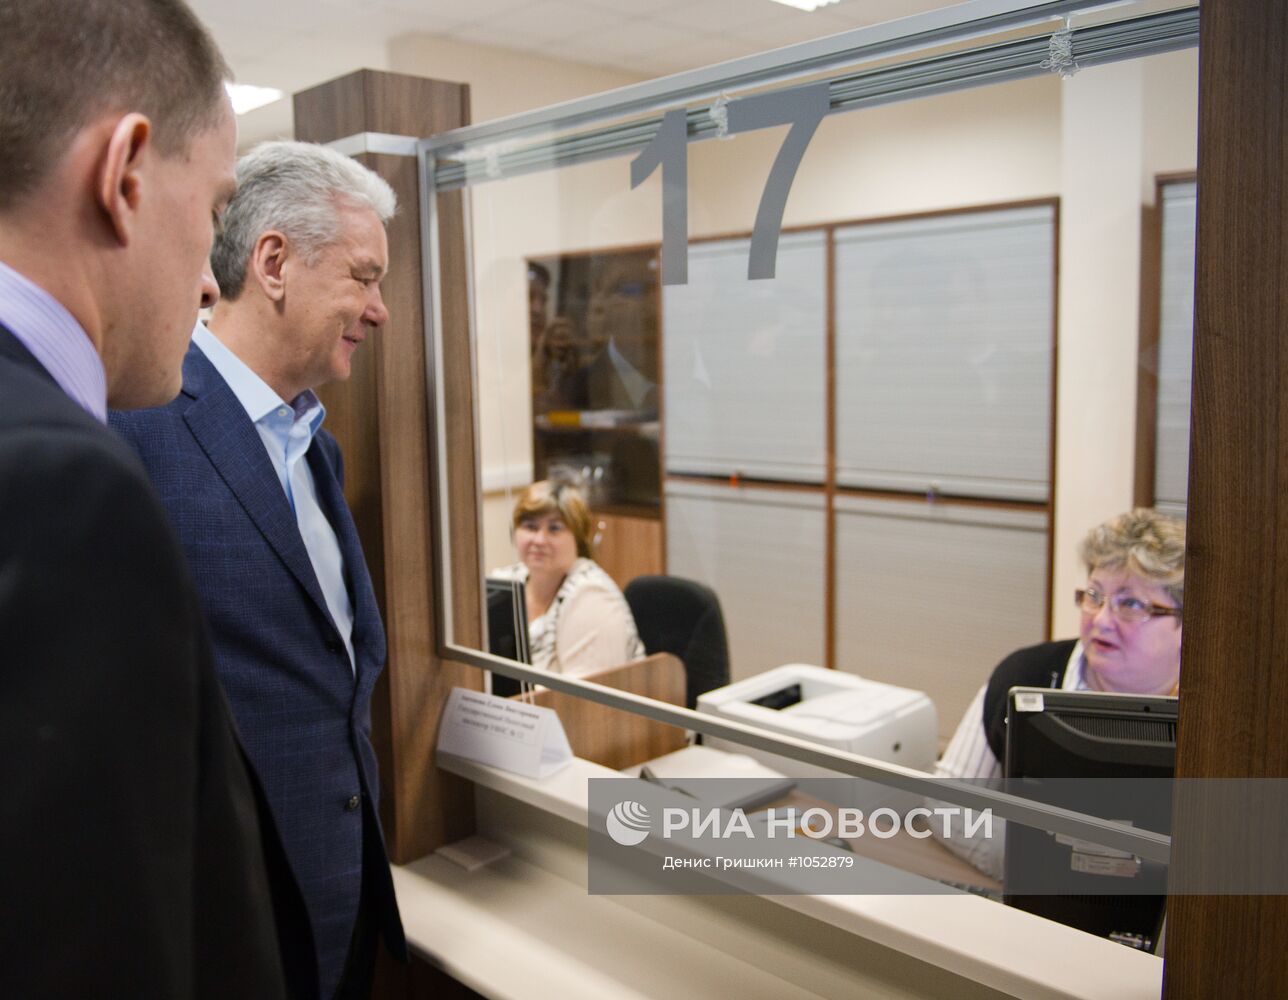 Сергей Собянин посетил центр предоставления госуслуг в Москве